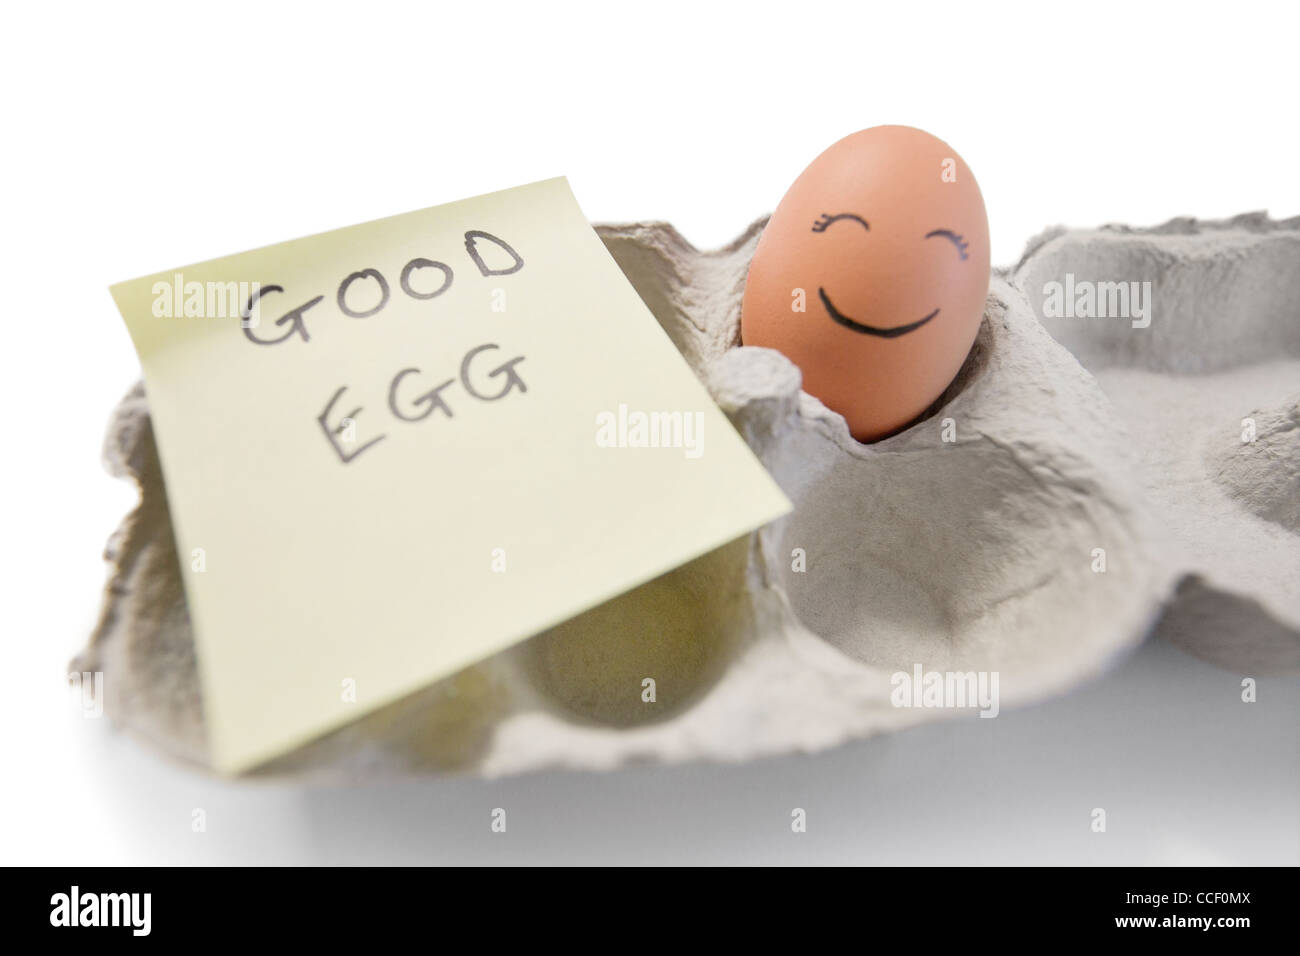 Glücklich Ei mit einer Notiz geschrieben "Ei, Ei" Stockfoto